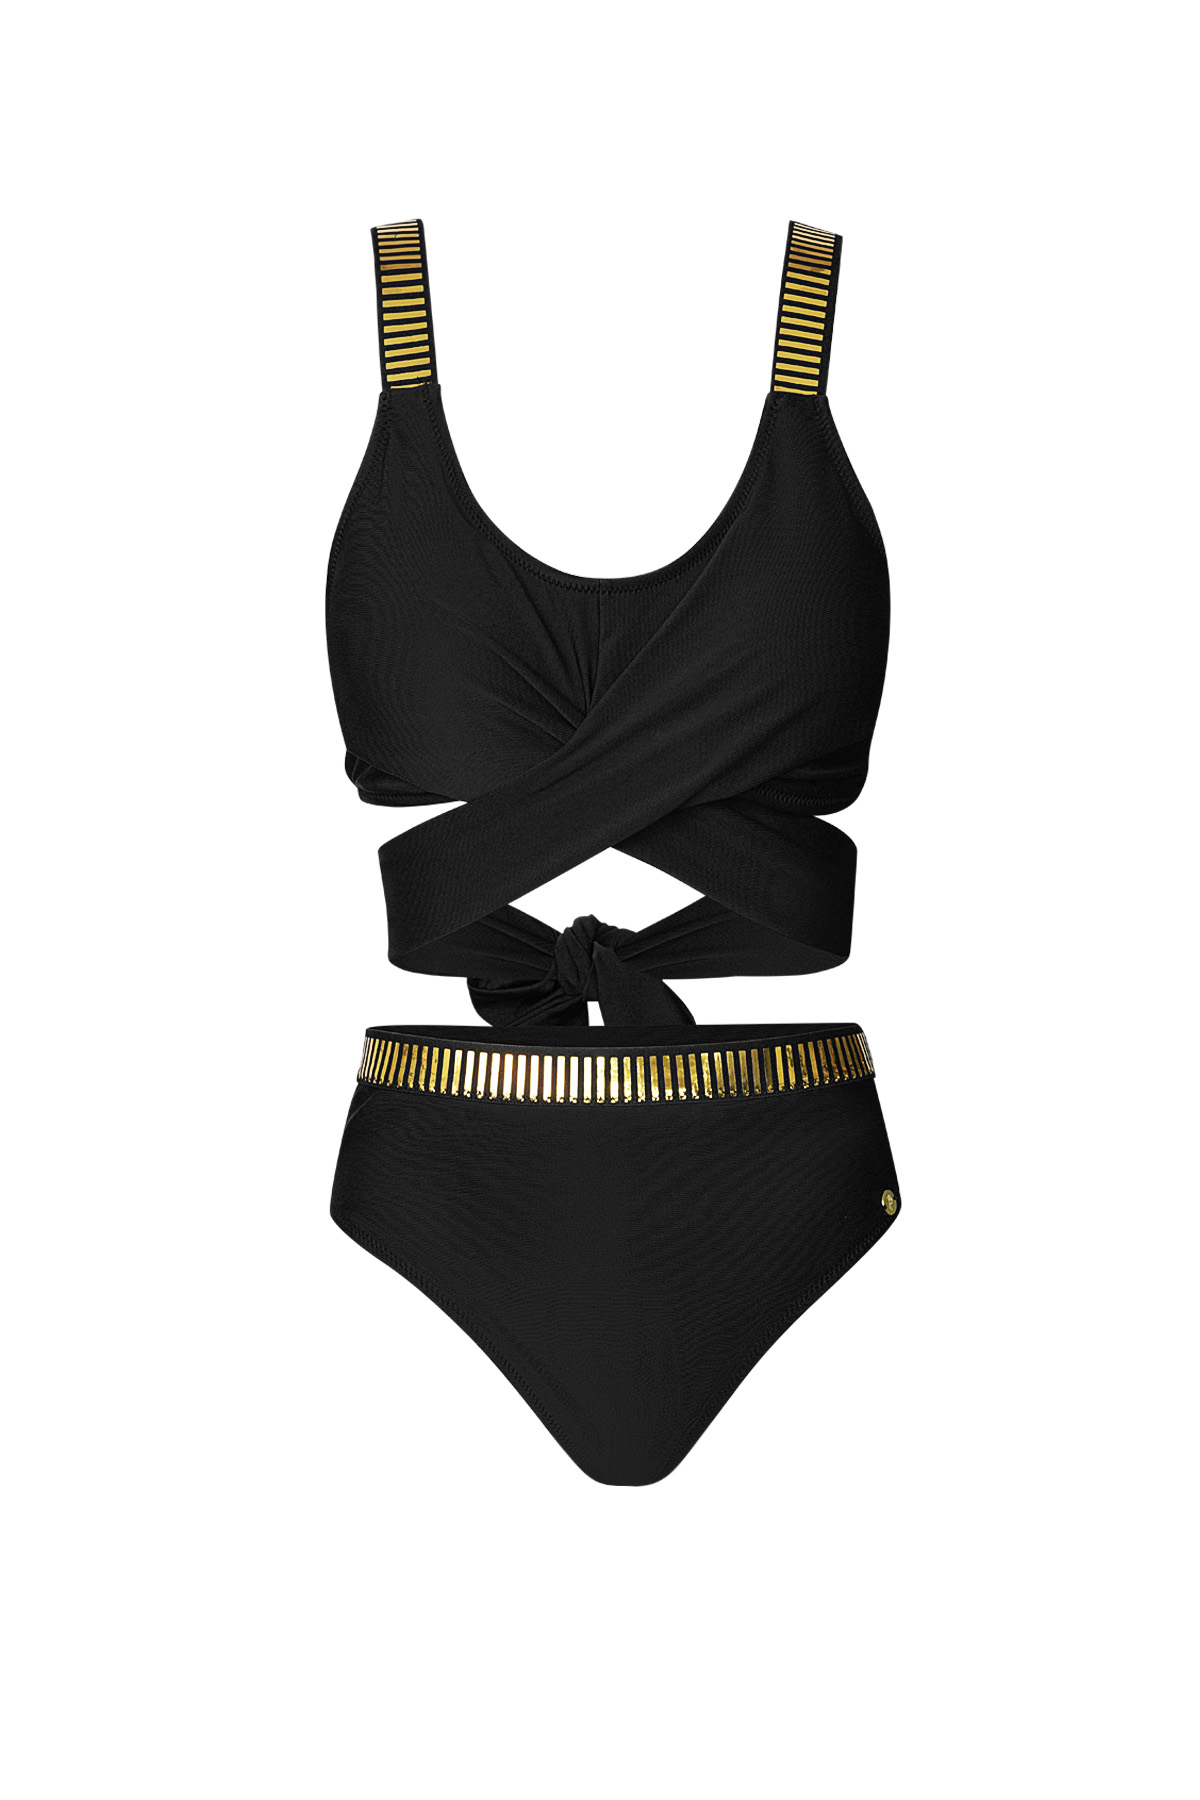 Button bikini gold stripes - black M 